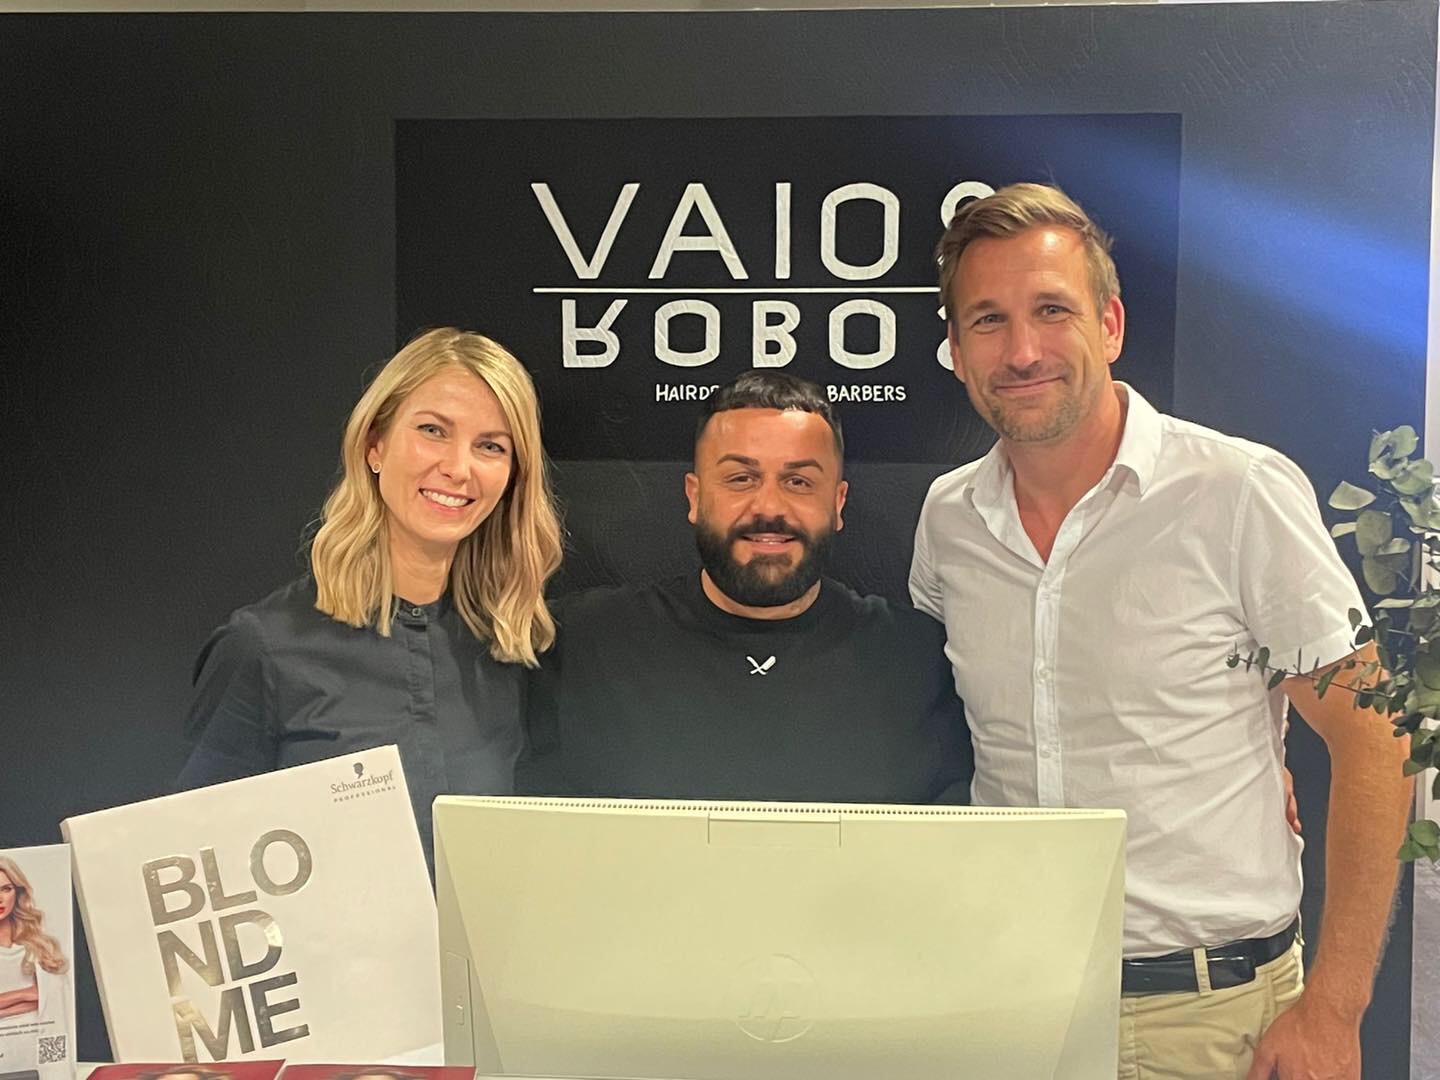 Vaios Robos Hairdressers & Barbers in Hockenheim ist neuer Partner von Schwarzkopf Professional